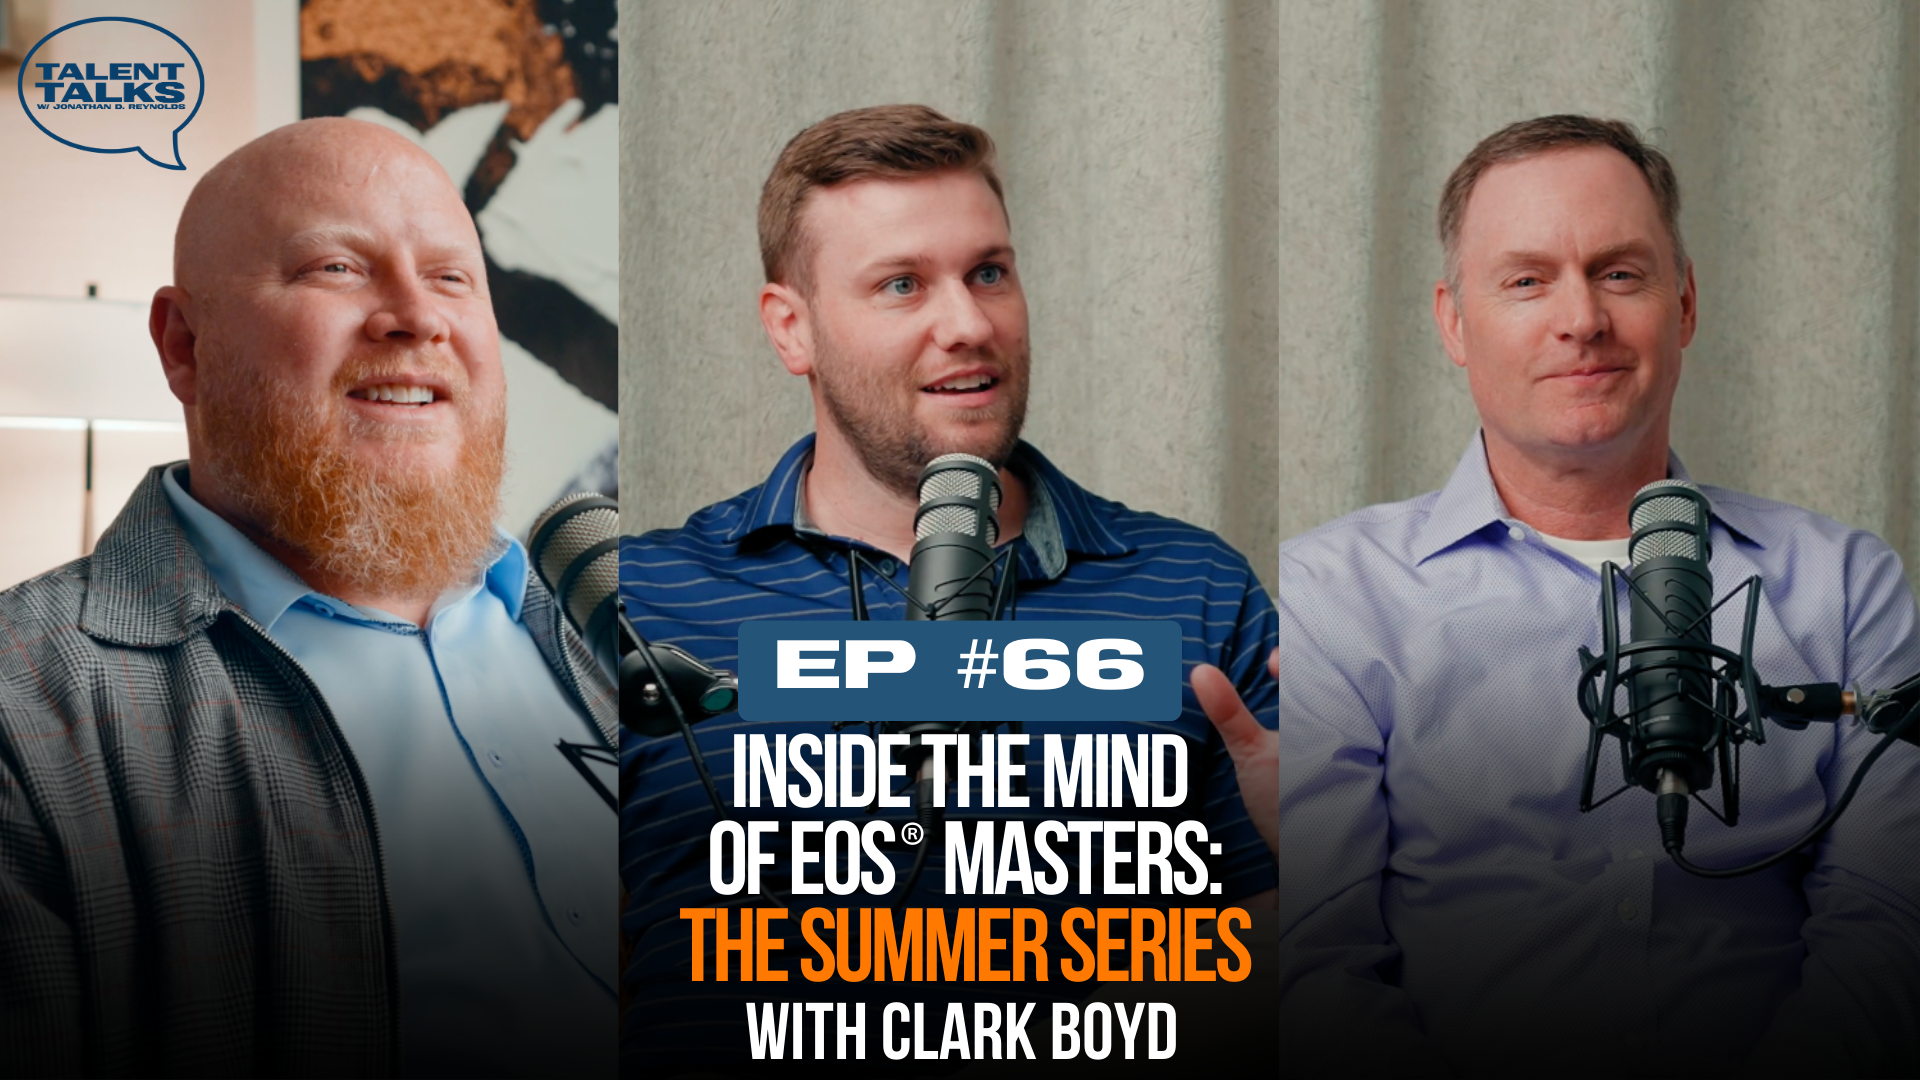 EOS Podcast - Clark Boyd